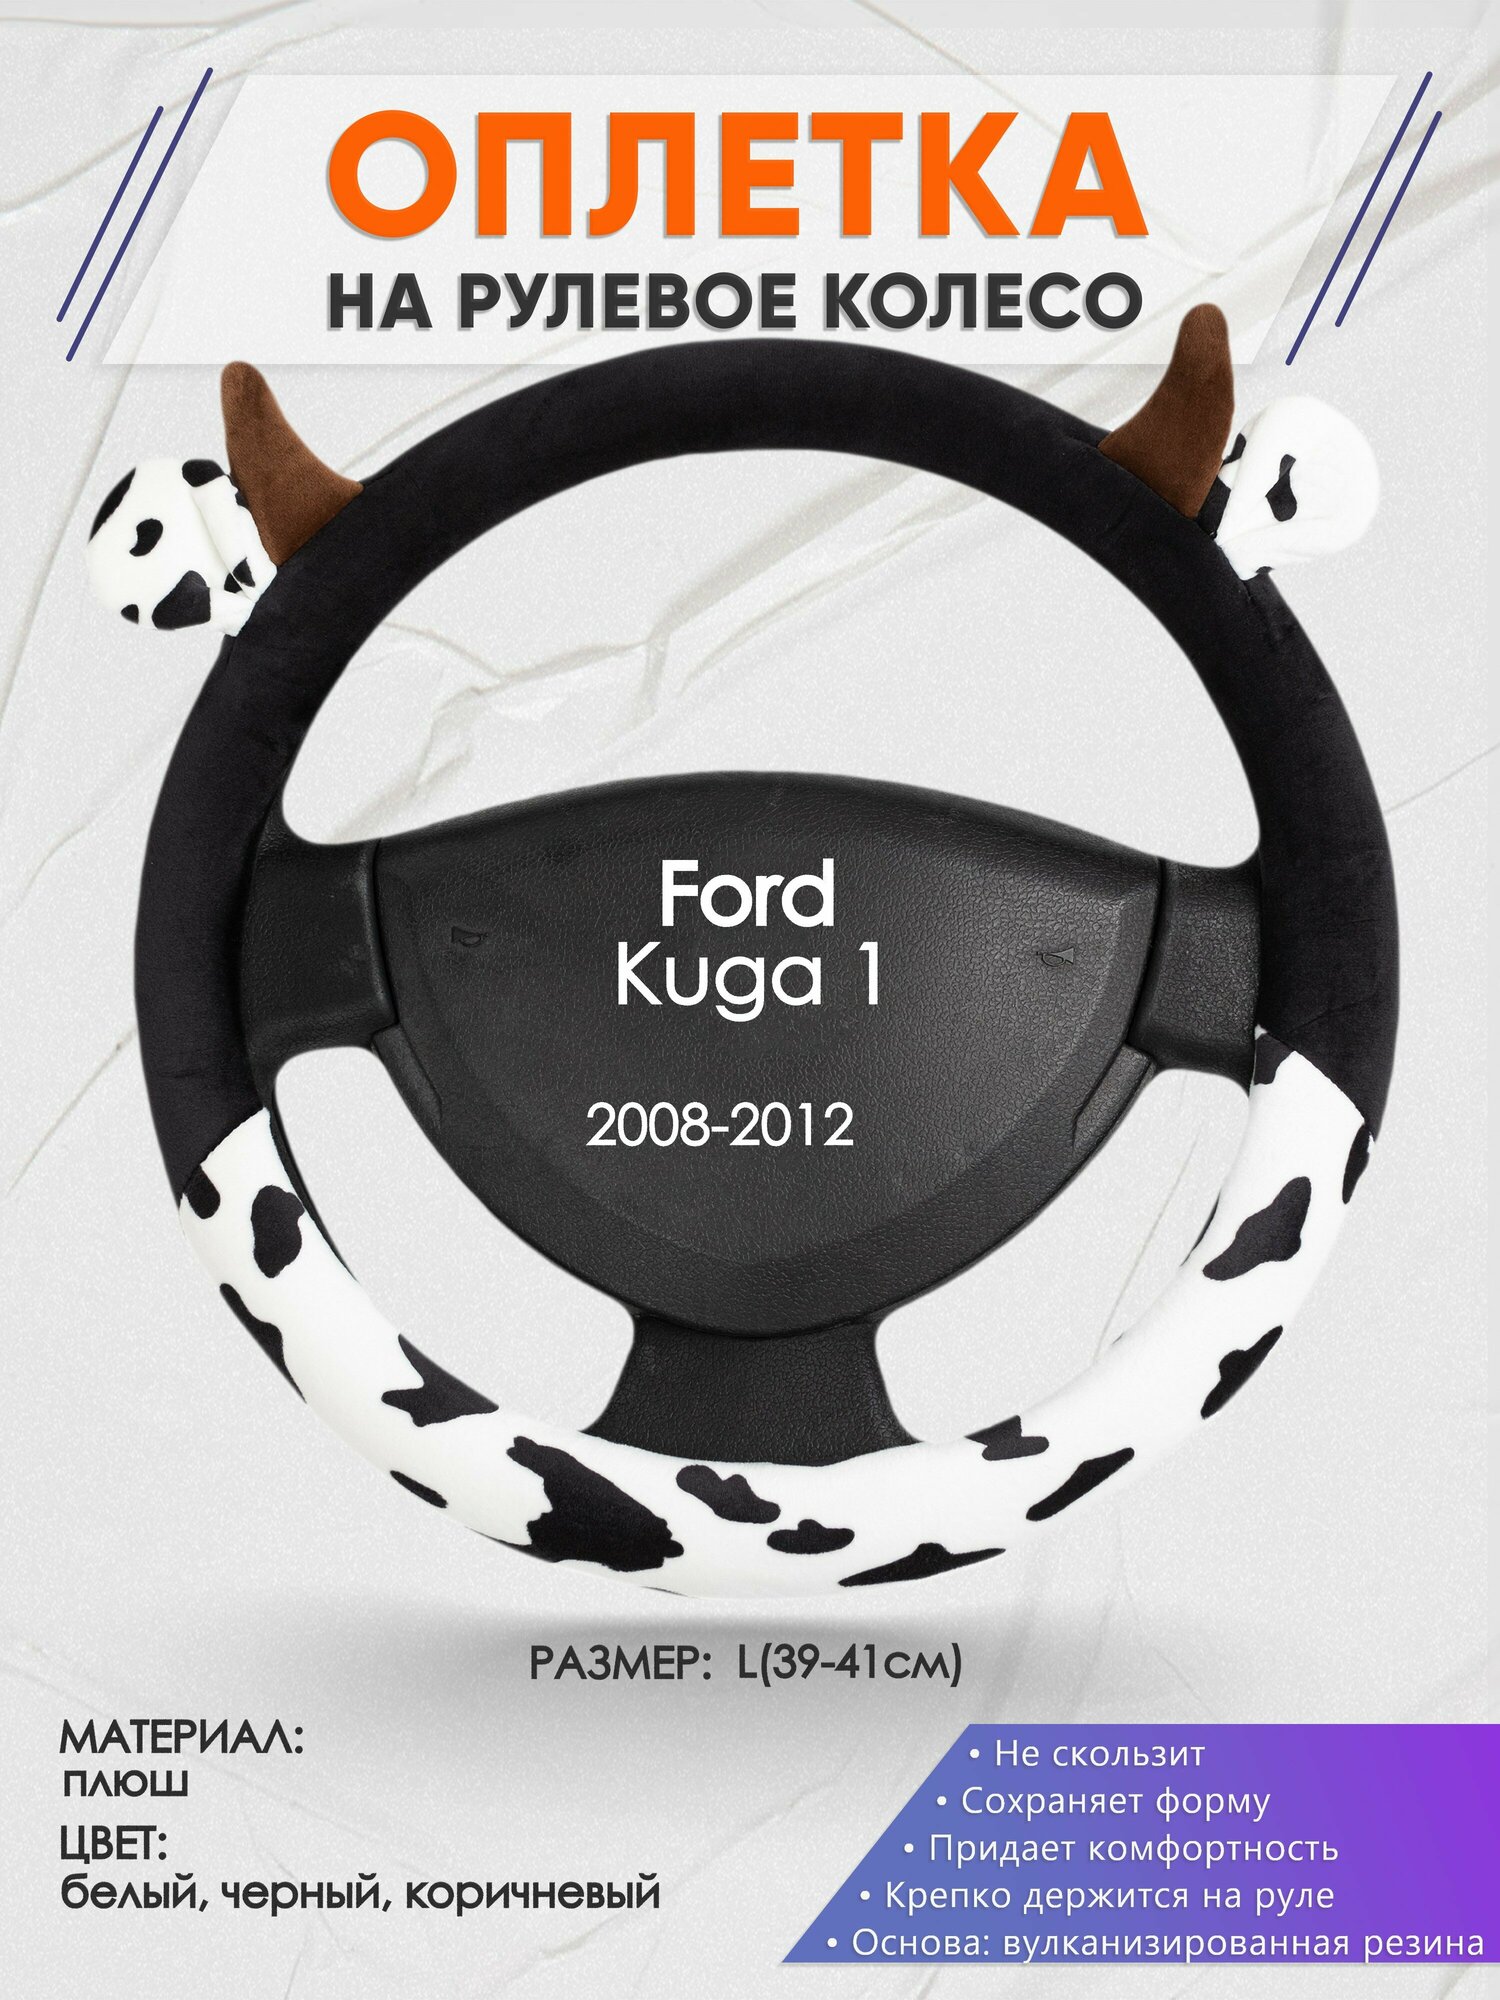 Оплетка на руль для Ford Kuga 1(Форд Куга 1) 2008-2012, L(39-41см), Искусственный мех 39